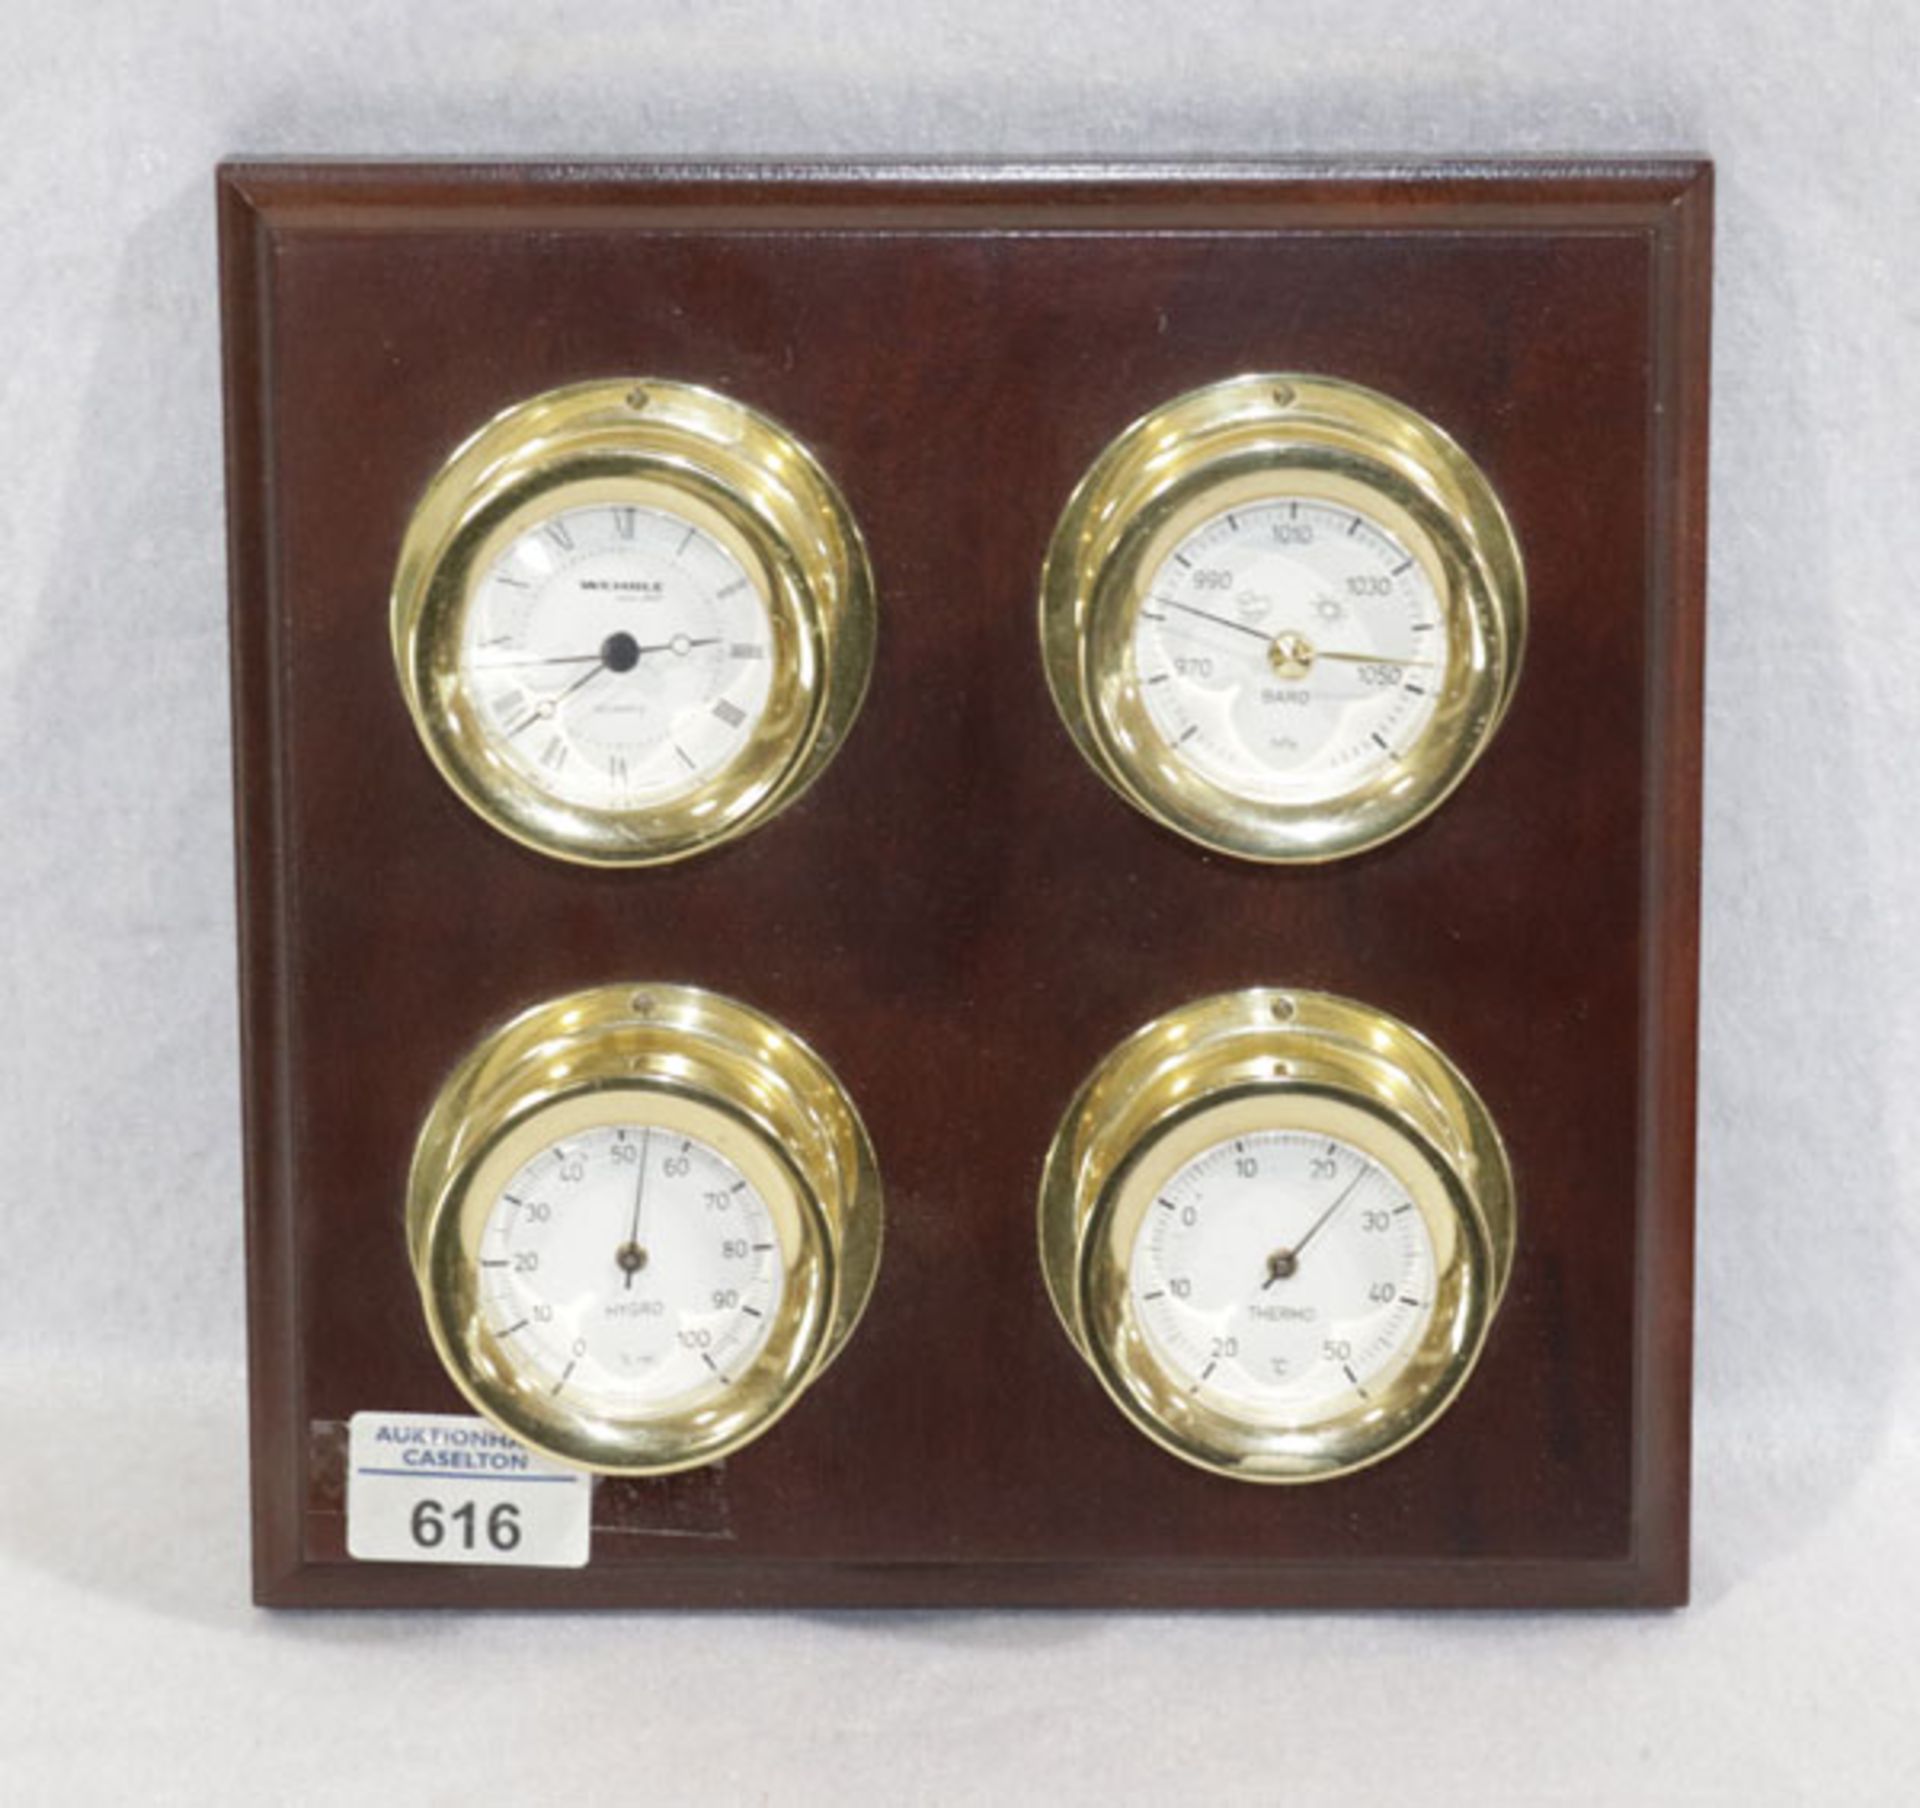 Wehrle Uhren- und Wetterstation, Uhr, Barometer, Hygrometer und Termometer, auf Holz montiert, H 6